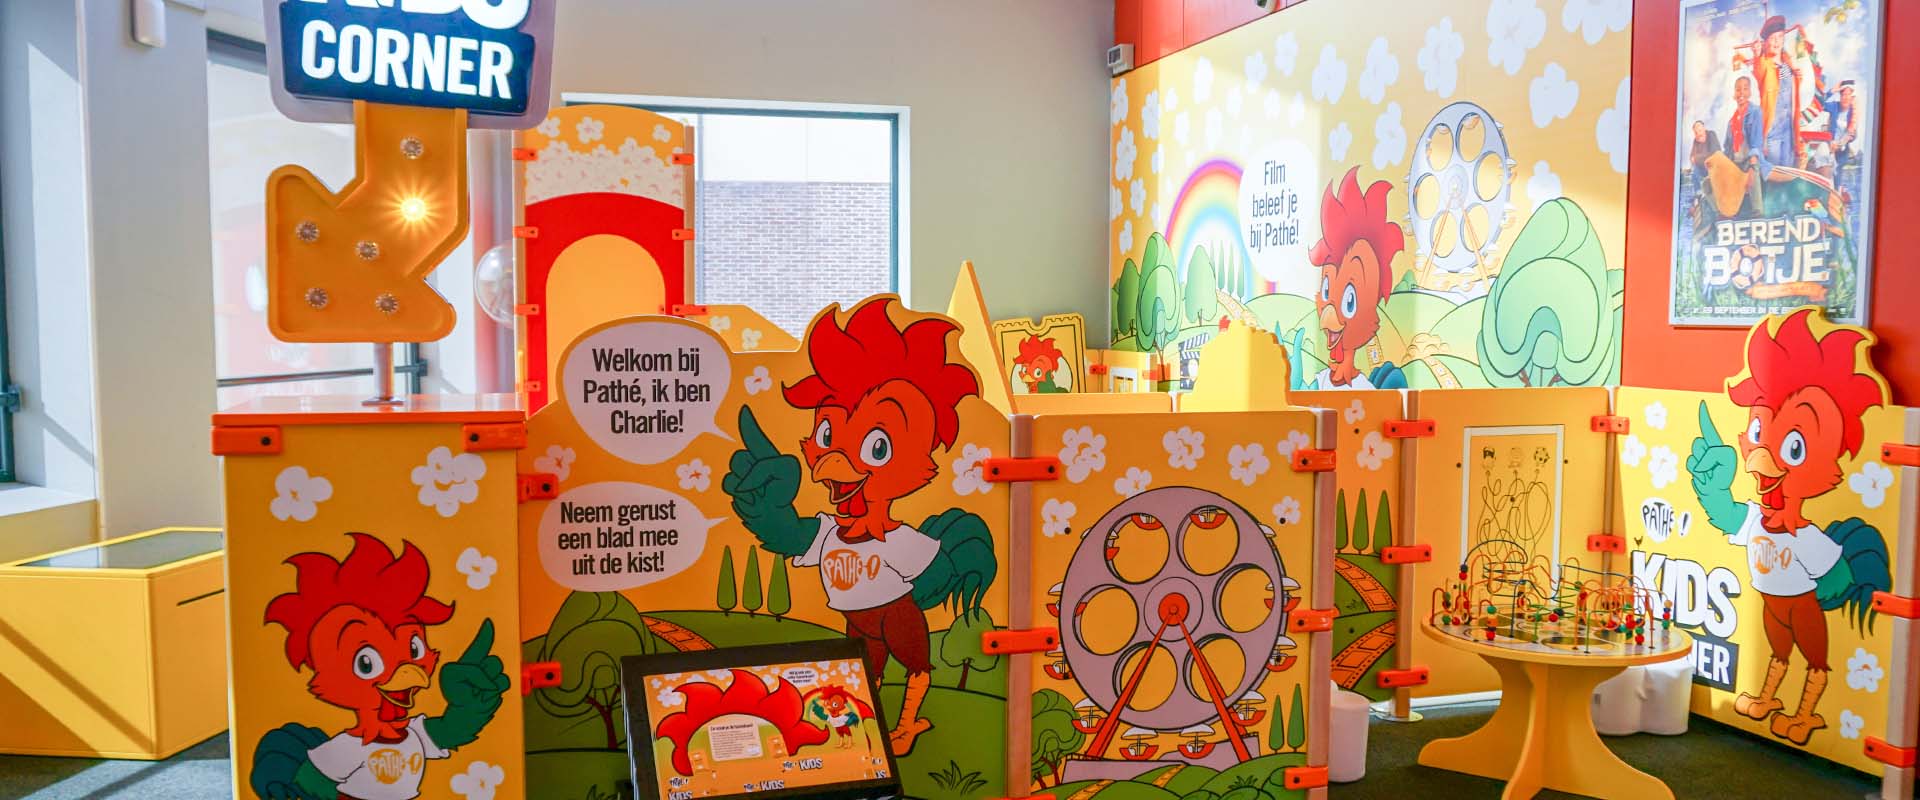 Un rincón de juegos a medida en el cine Pathé de Helmond, una empresa que se adapta a los niños